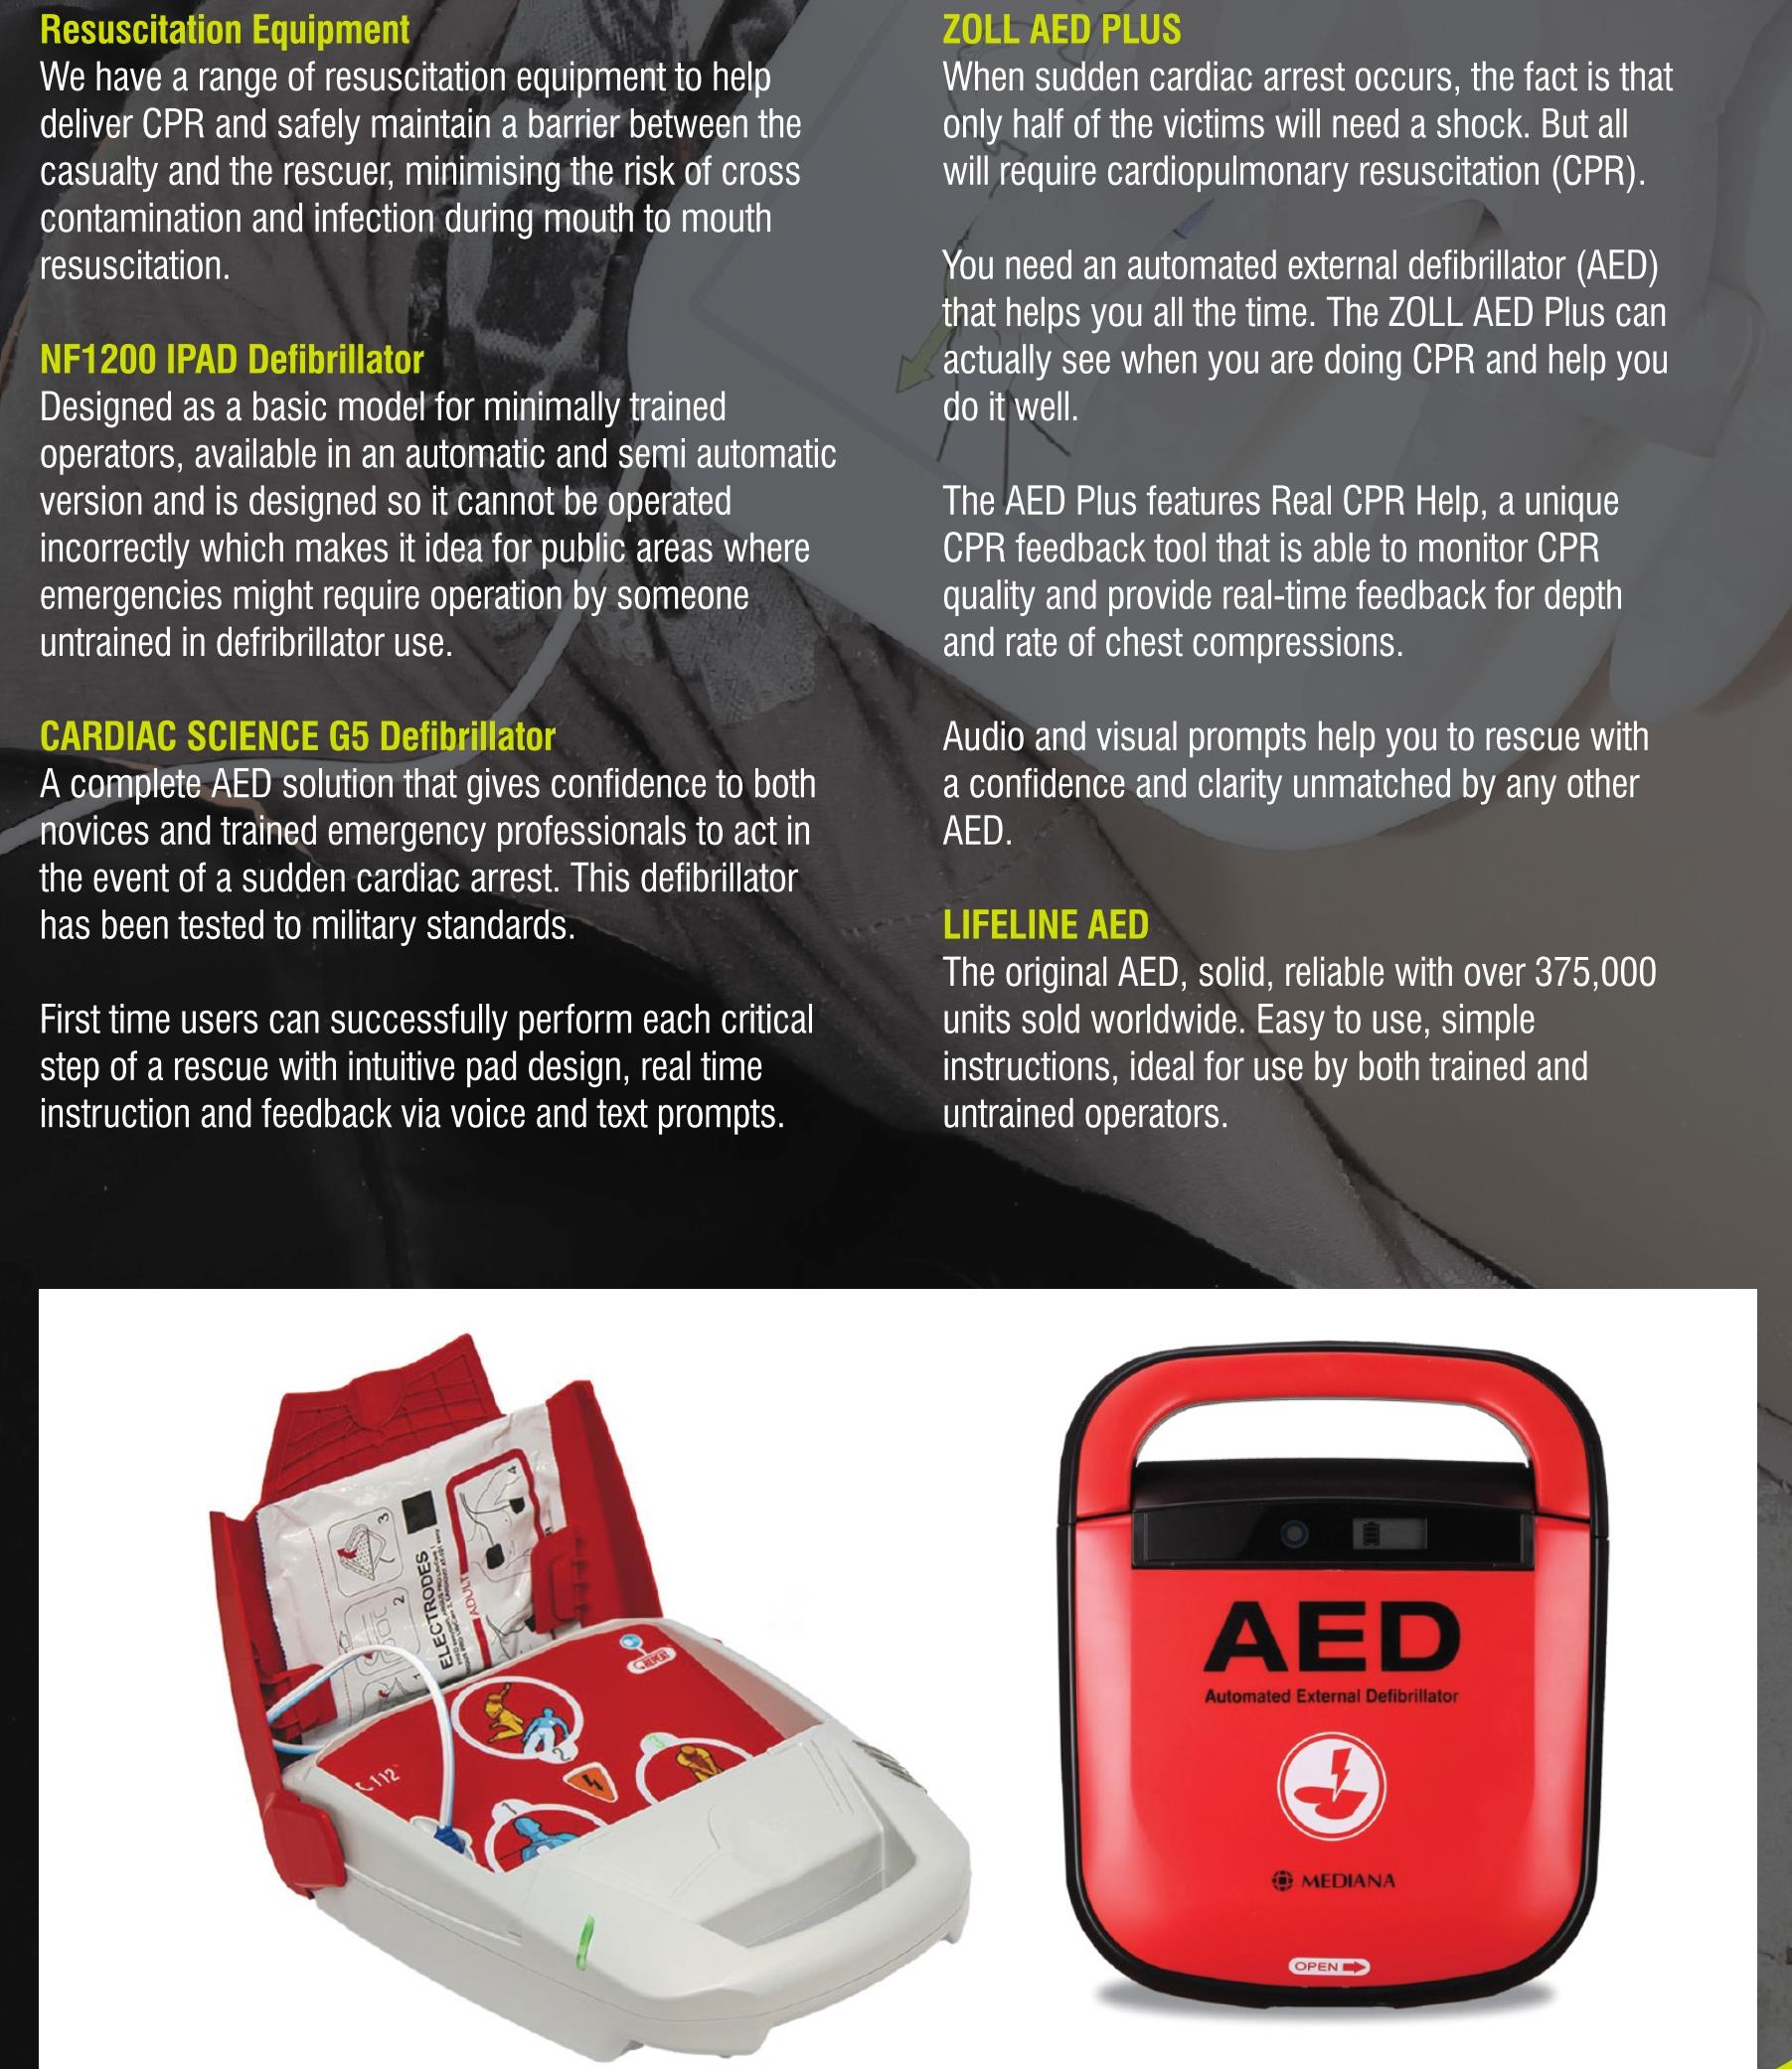 Defibrillators and Resuscitation Kits